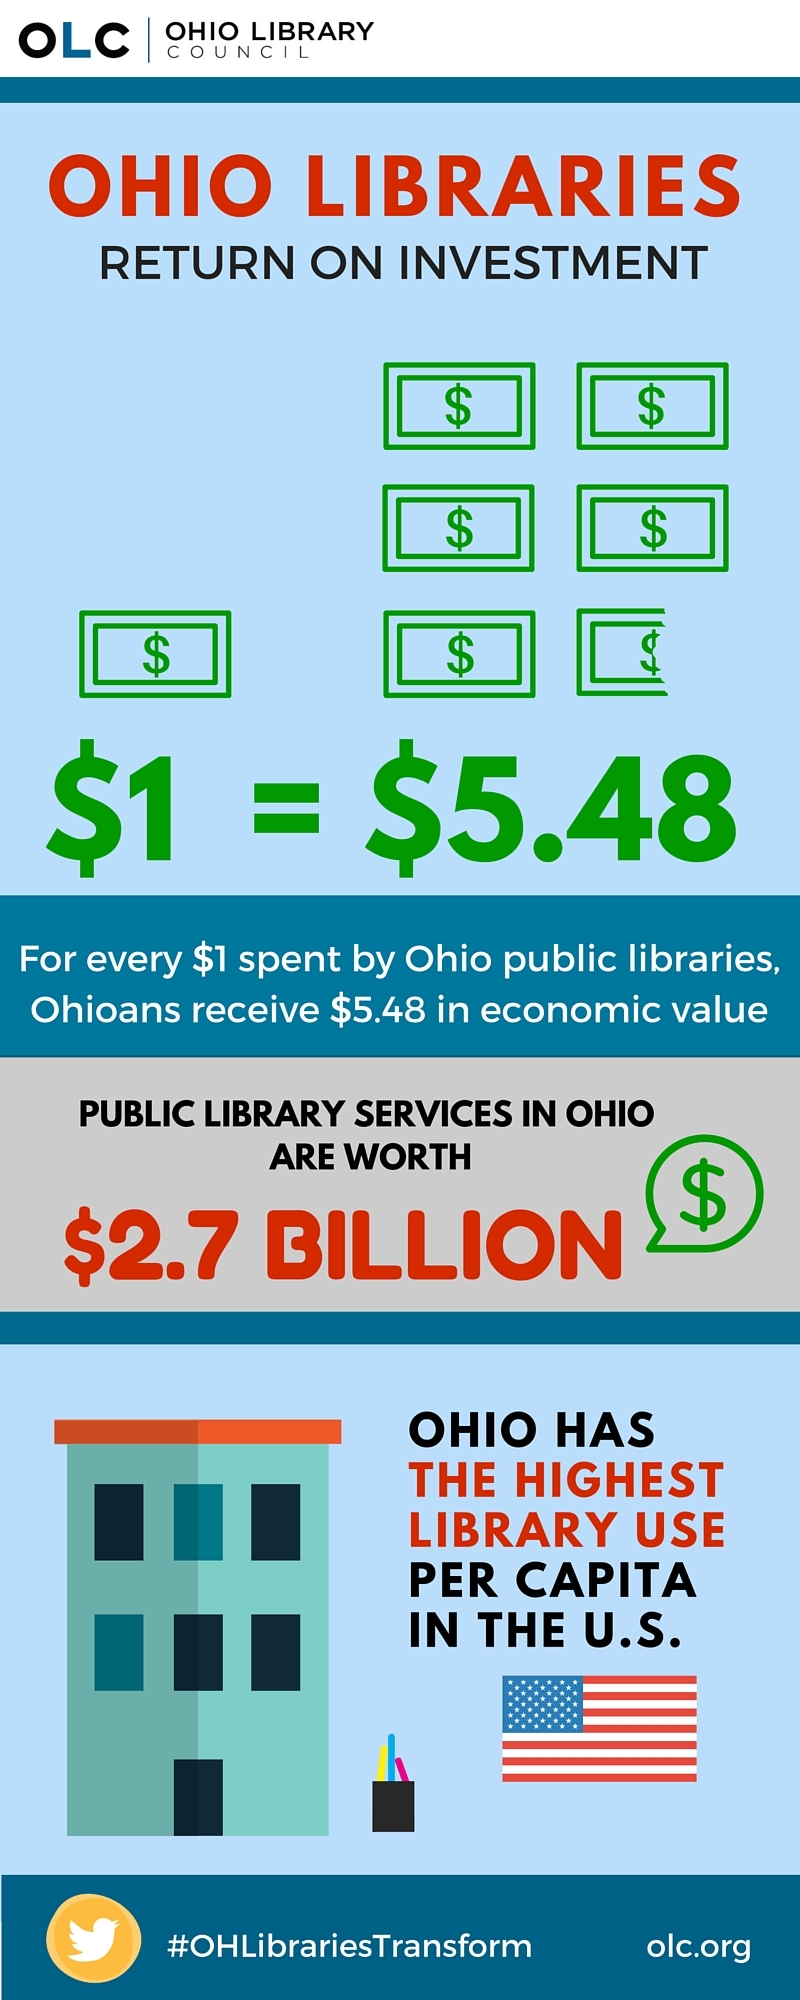 Ohio Libraries infographic